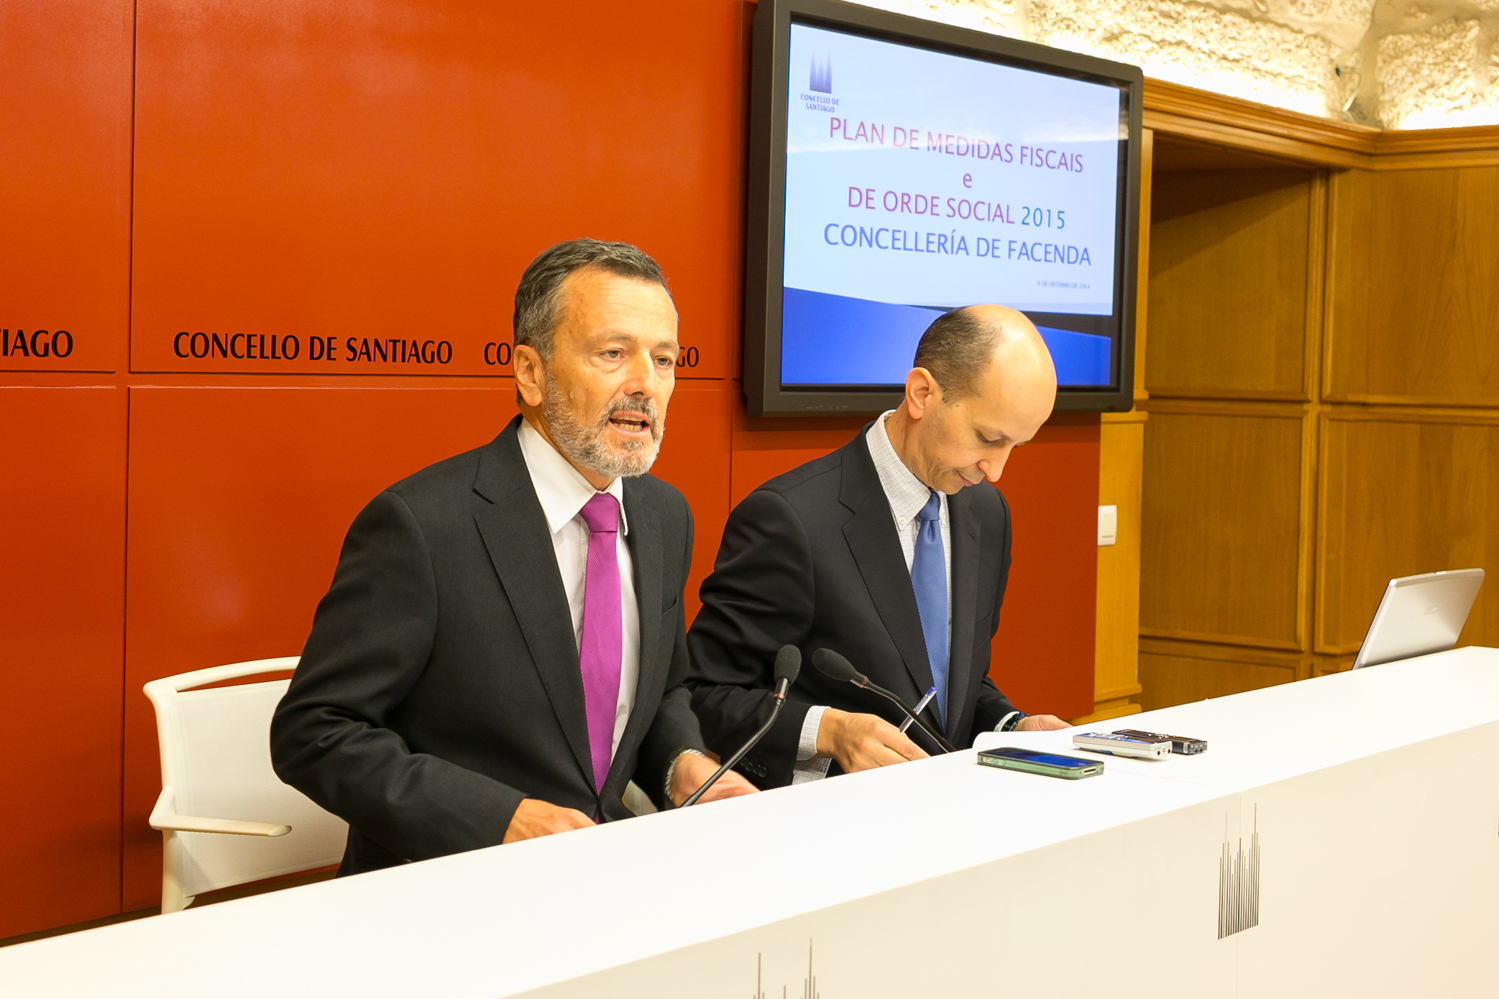 Agustín Hernández e Ramón Quiroga explicaron o plan de medidas fiscais.